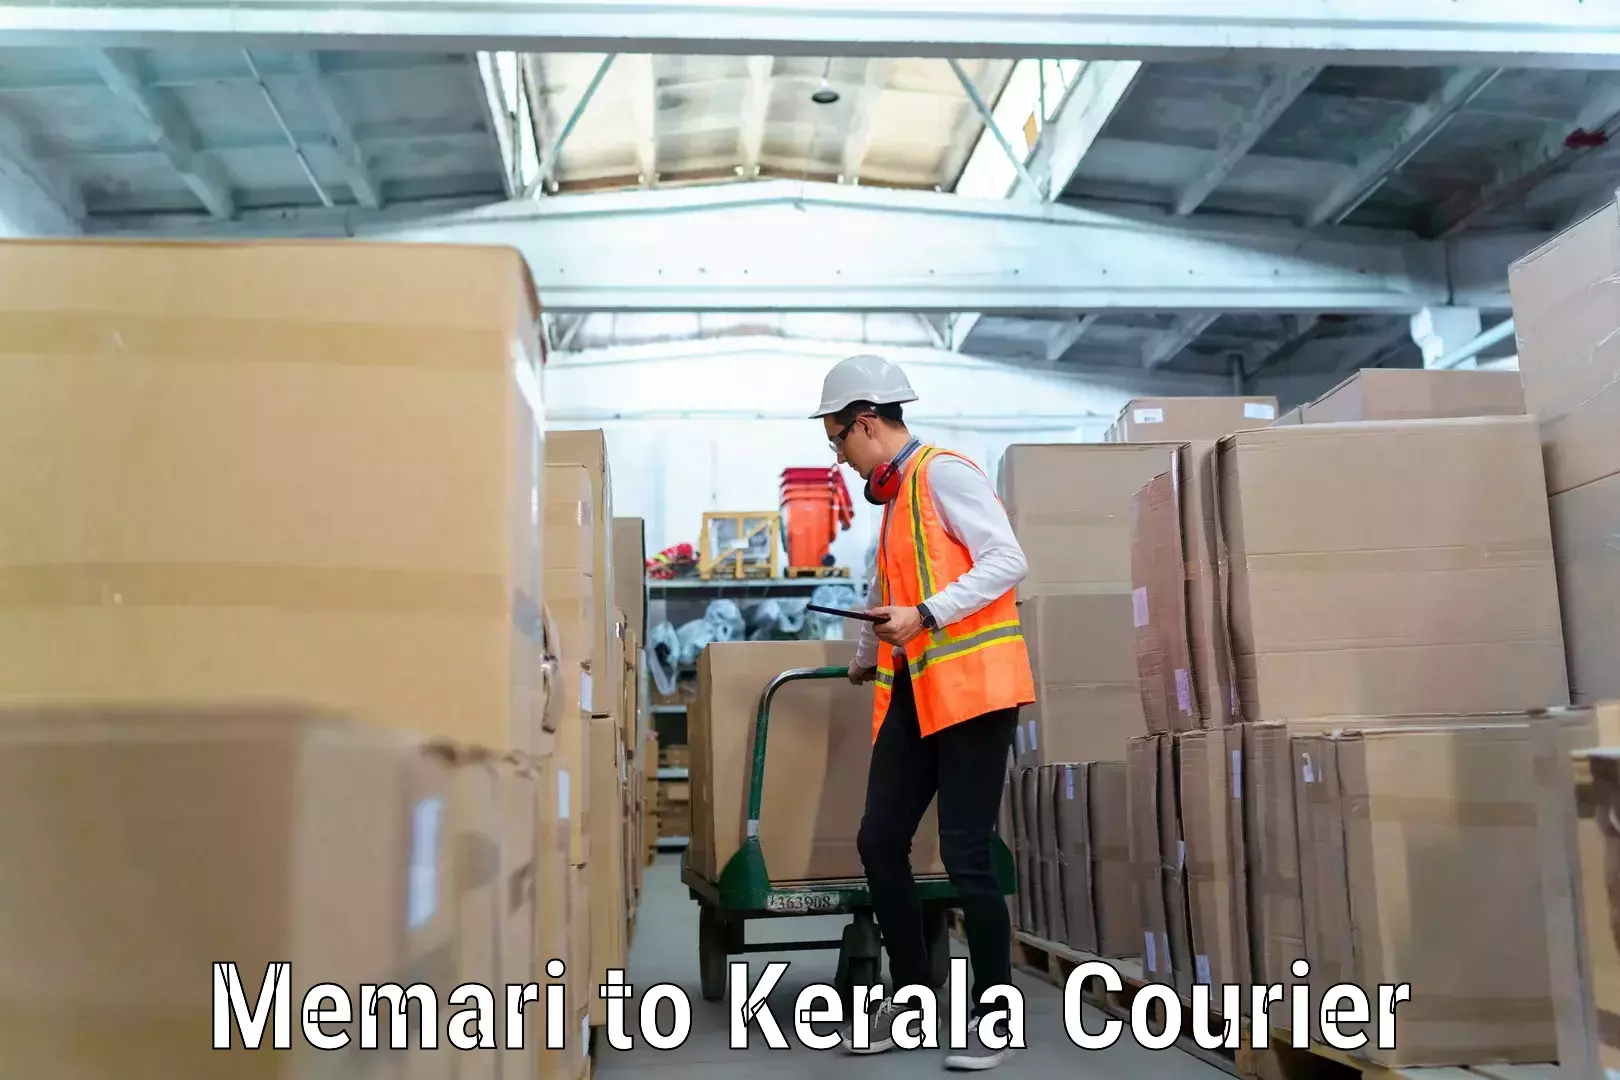 Skilled furniture transporters Memari to Kerala